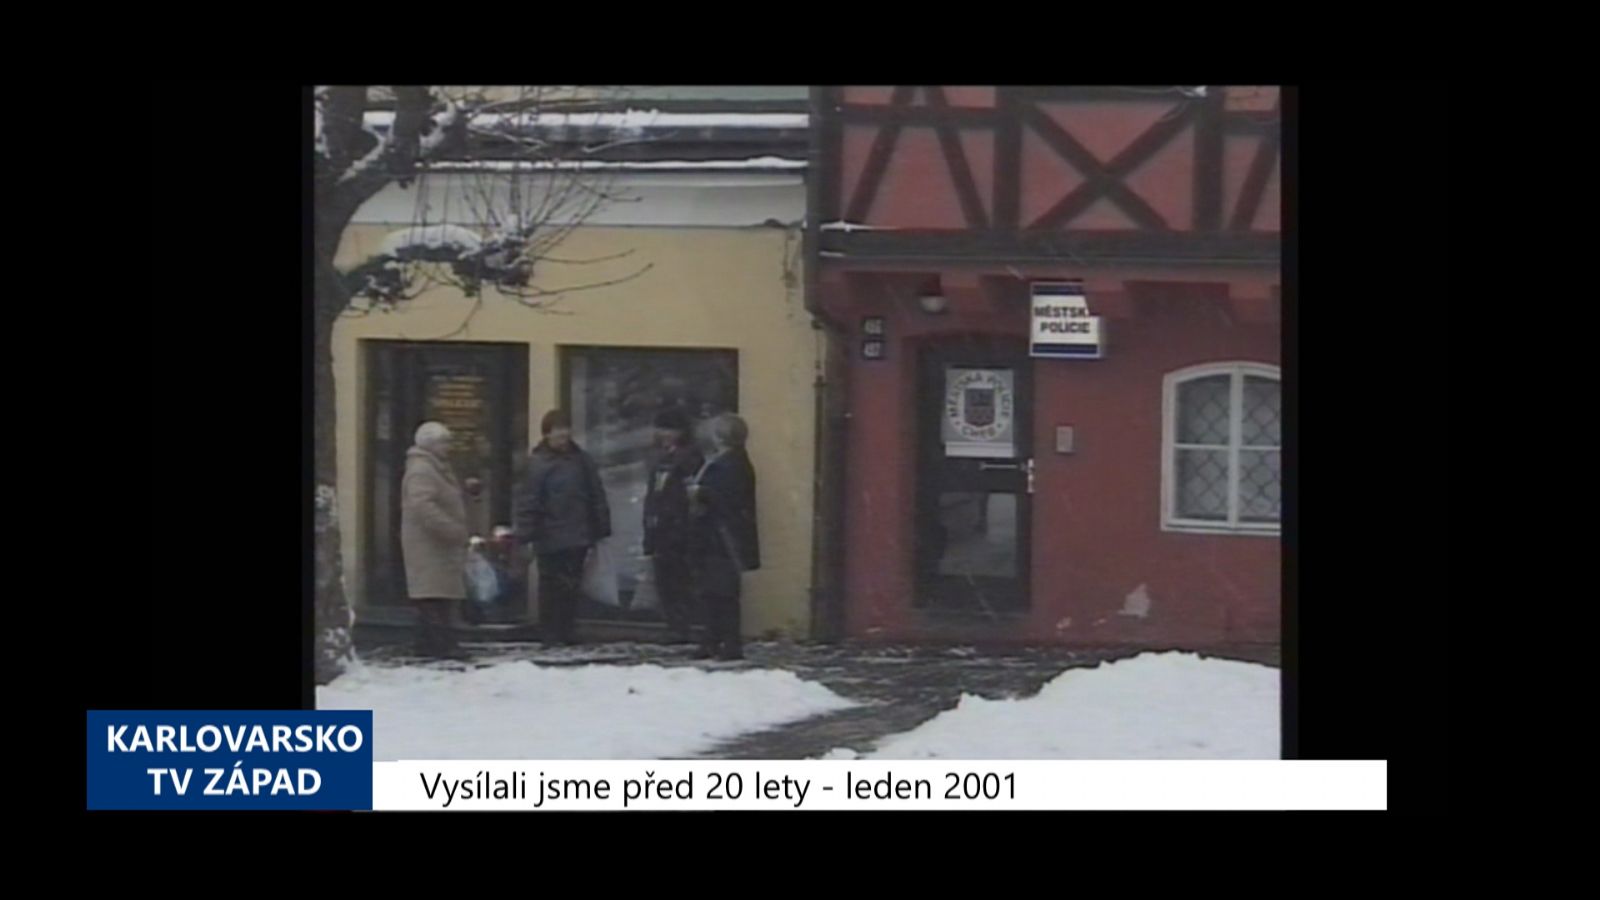 2001 – Cheb: Město navýší počet strážníků (TV Západ)